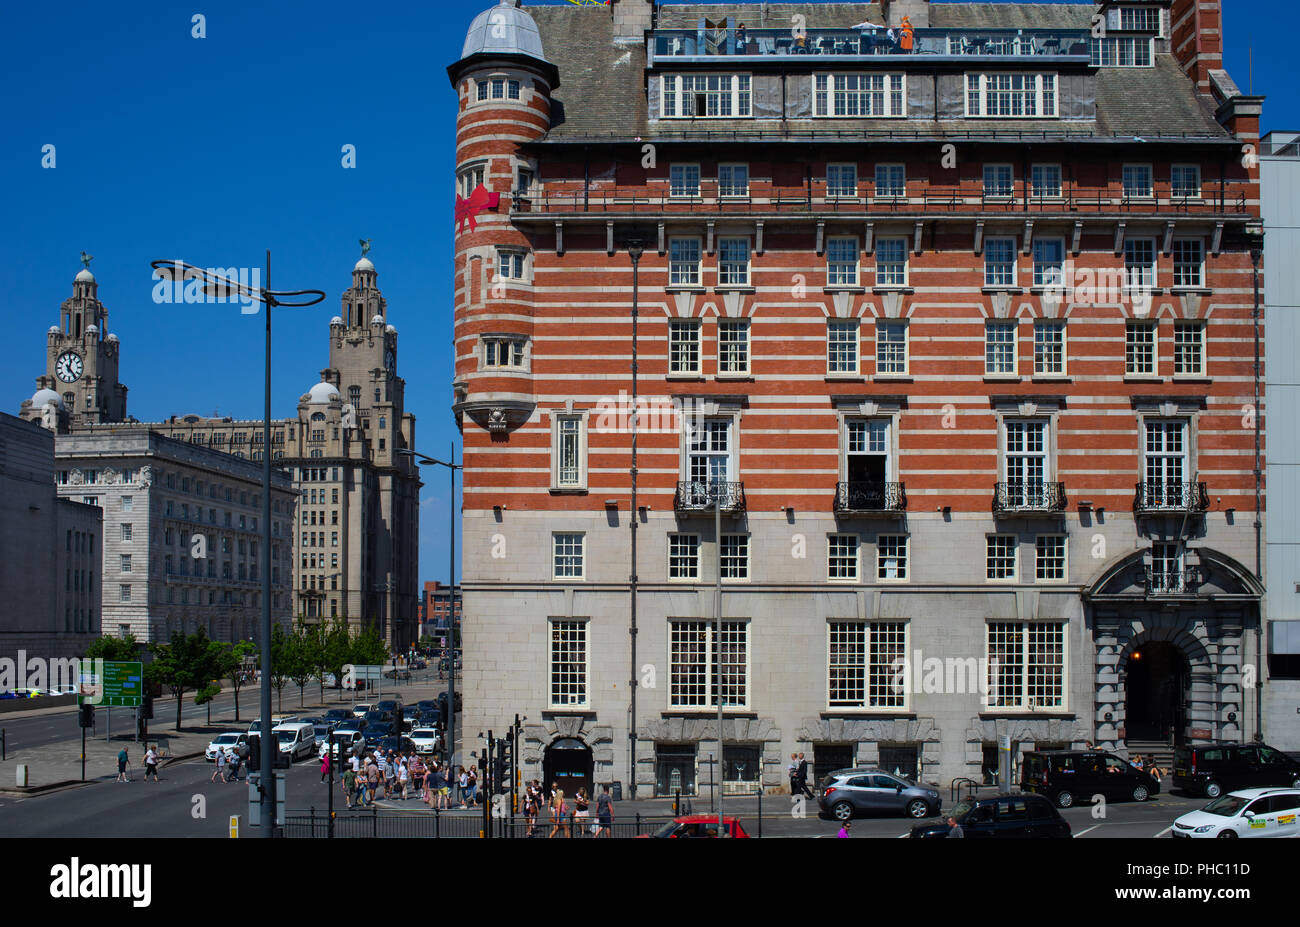 Albion House à 30 James St, Liverpool, anciennement la White Star Line bureaux, d'où le surnom "le Titanic". Maintenant un hôtel/lieu de fonction. Banque D'Images